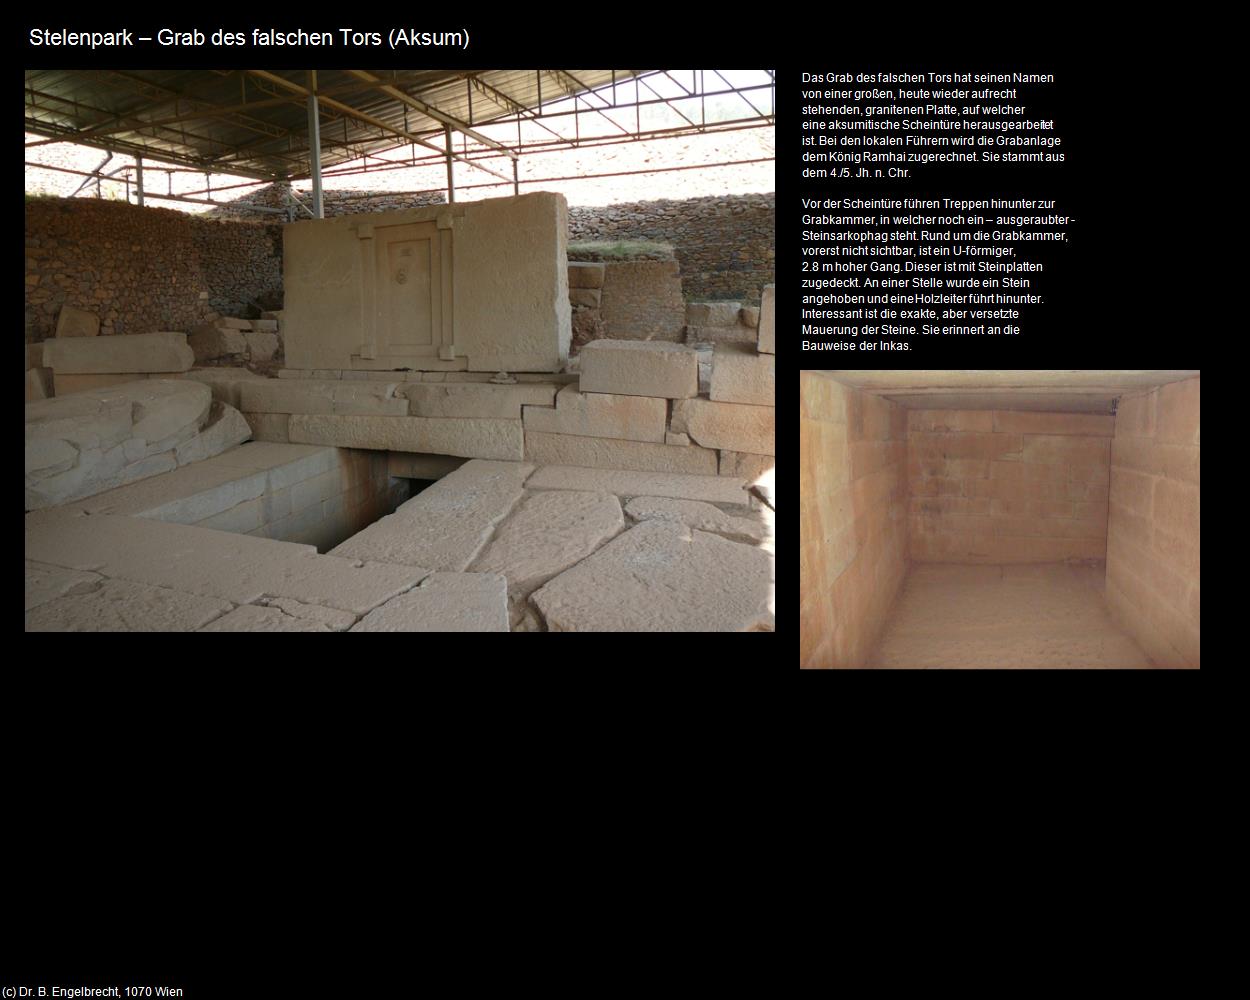 Grab des falschen Tors  (Aksum) in Äthiopien